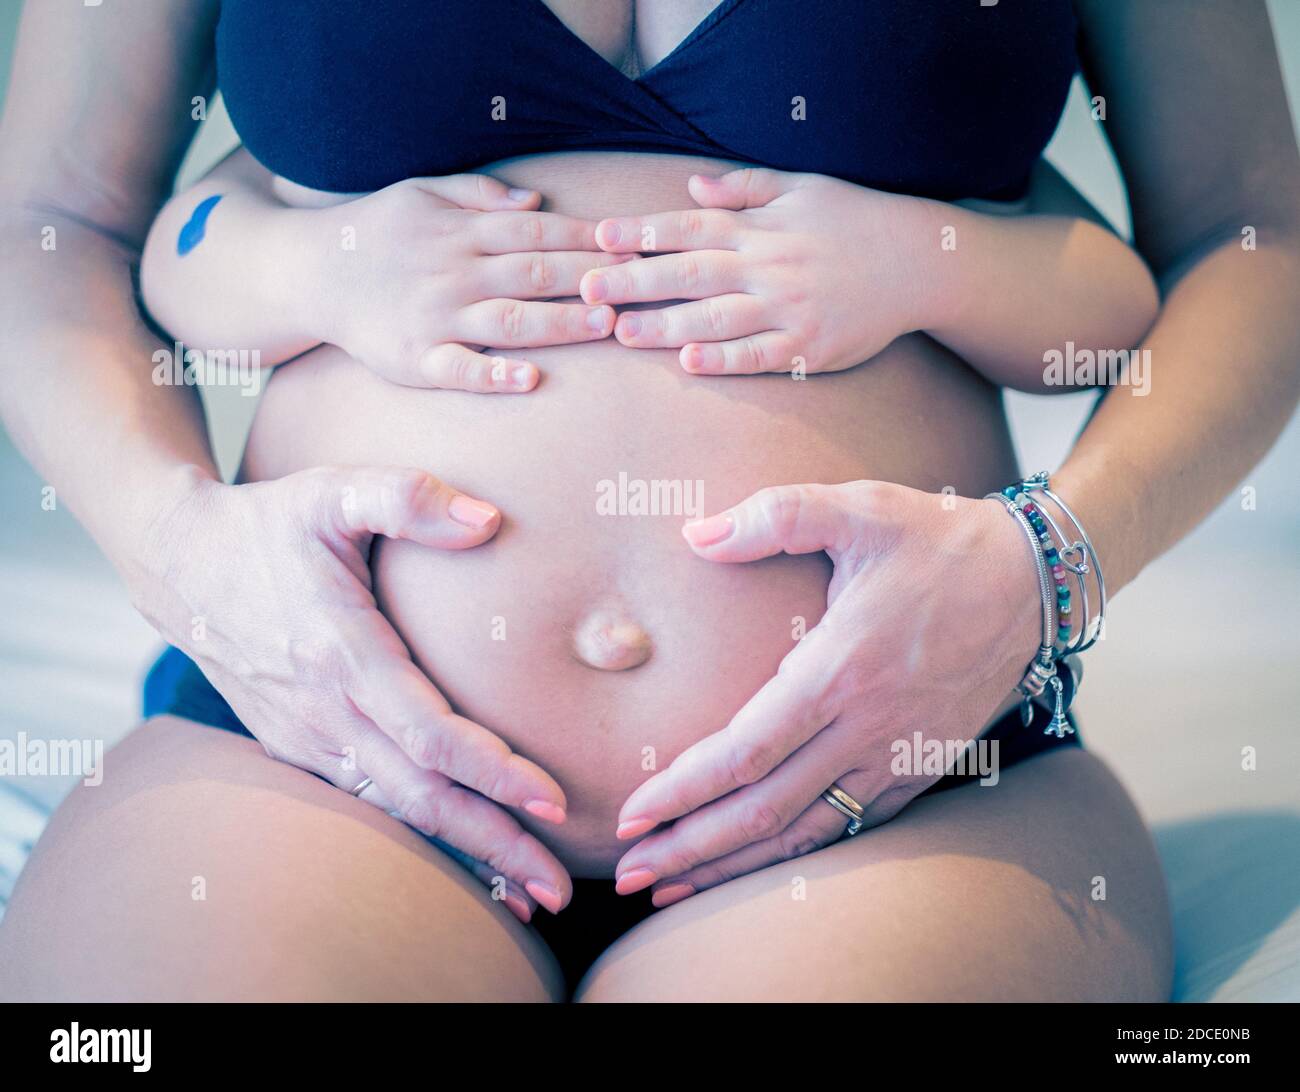 Primo piano immagine della donna incinta e del suo bambino che tiene Il suo ventre - Bambino che tiene il ventre della sua incinta Madre - donna incinta e il suo bambino holdin Foto Stock